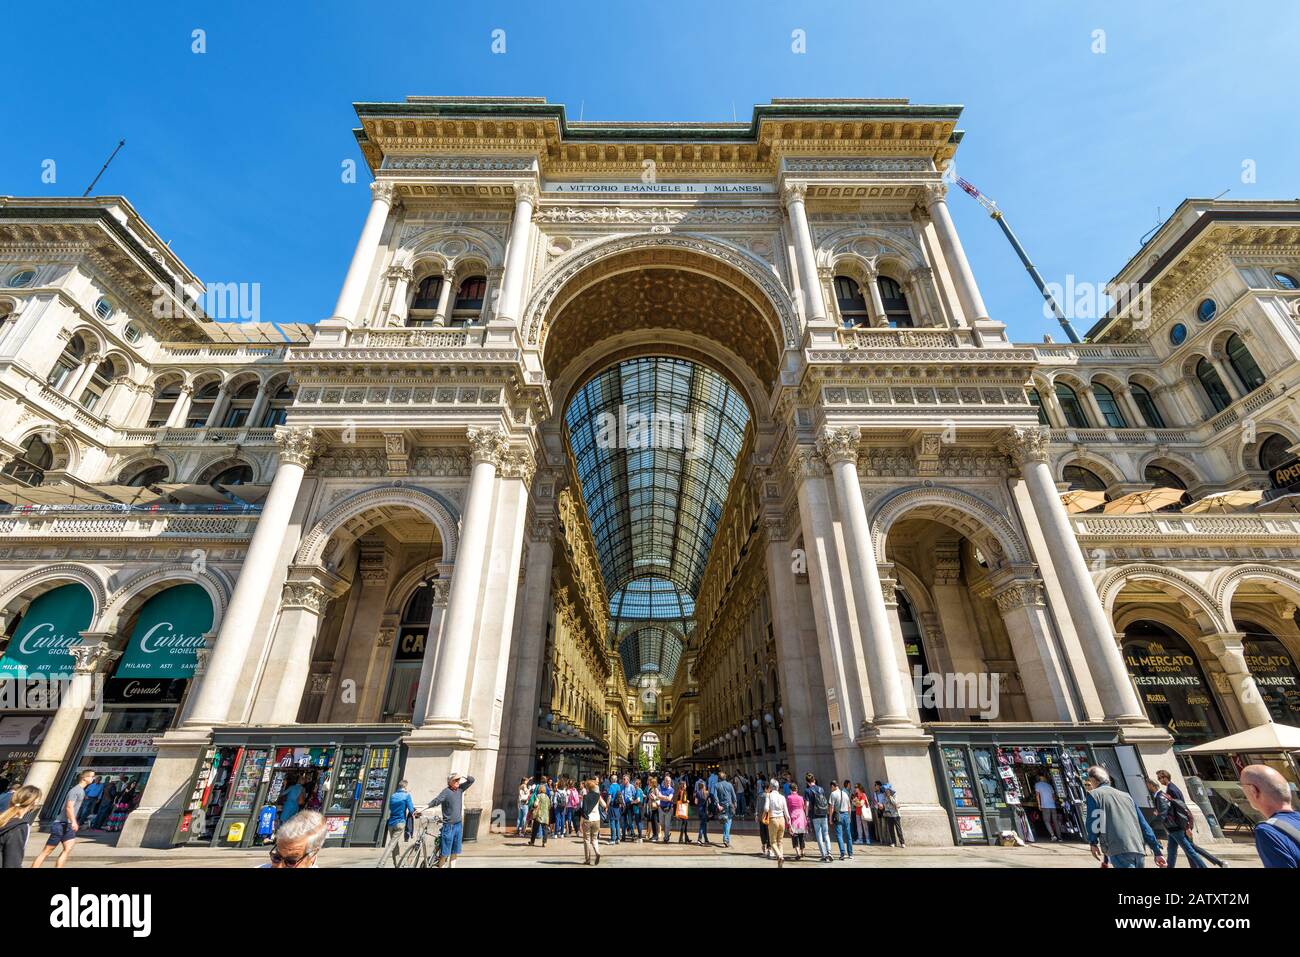 Milano, Italia - 16 maggio 2017: La Galleria Vittorio Emanuele II sulla Piazza del Duomo. Questa galleria è una delle più antiche del mondo Foto Stock